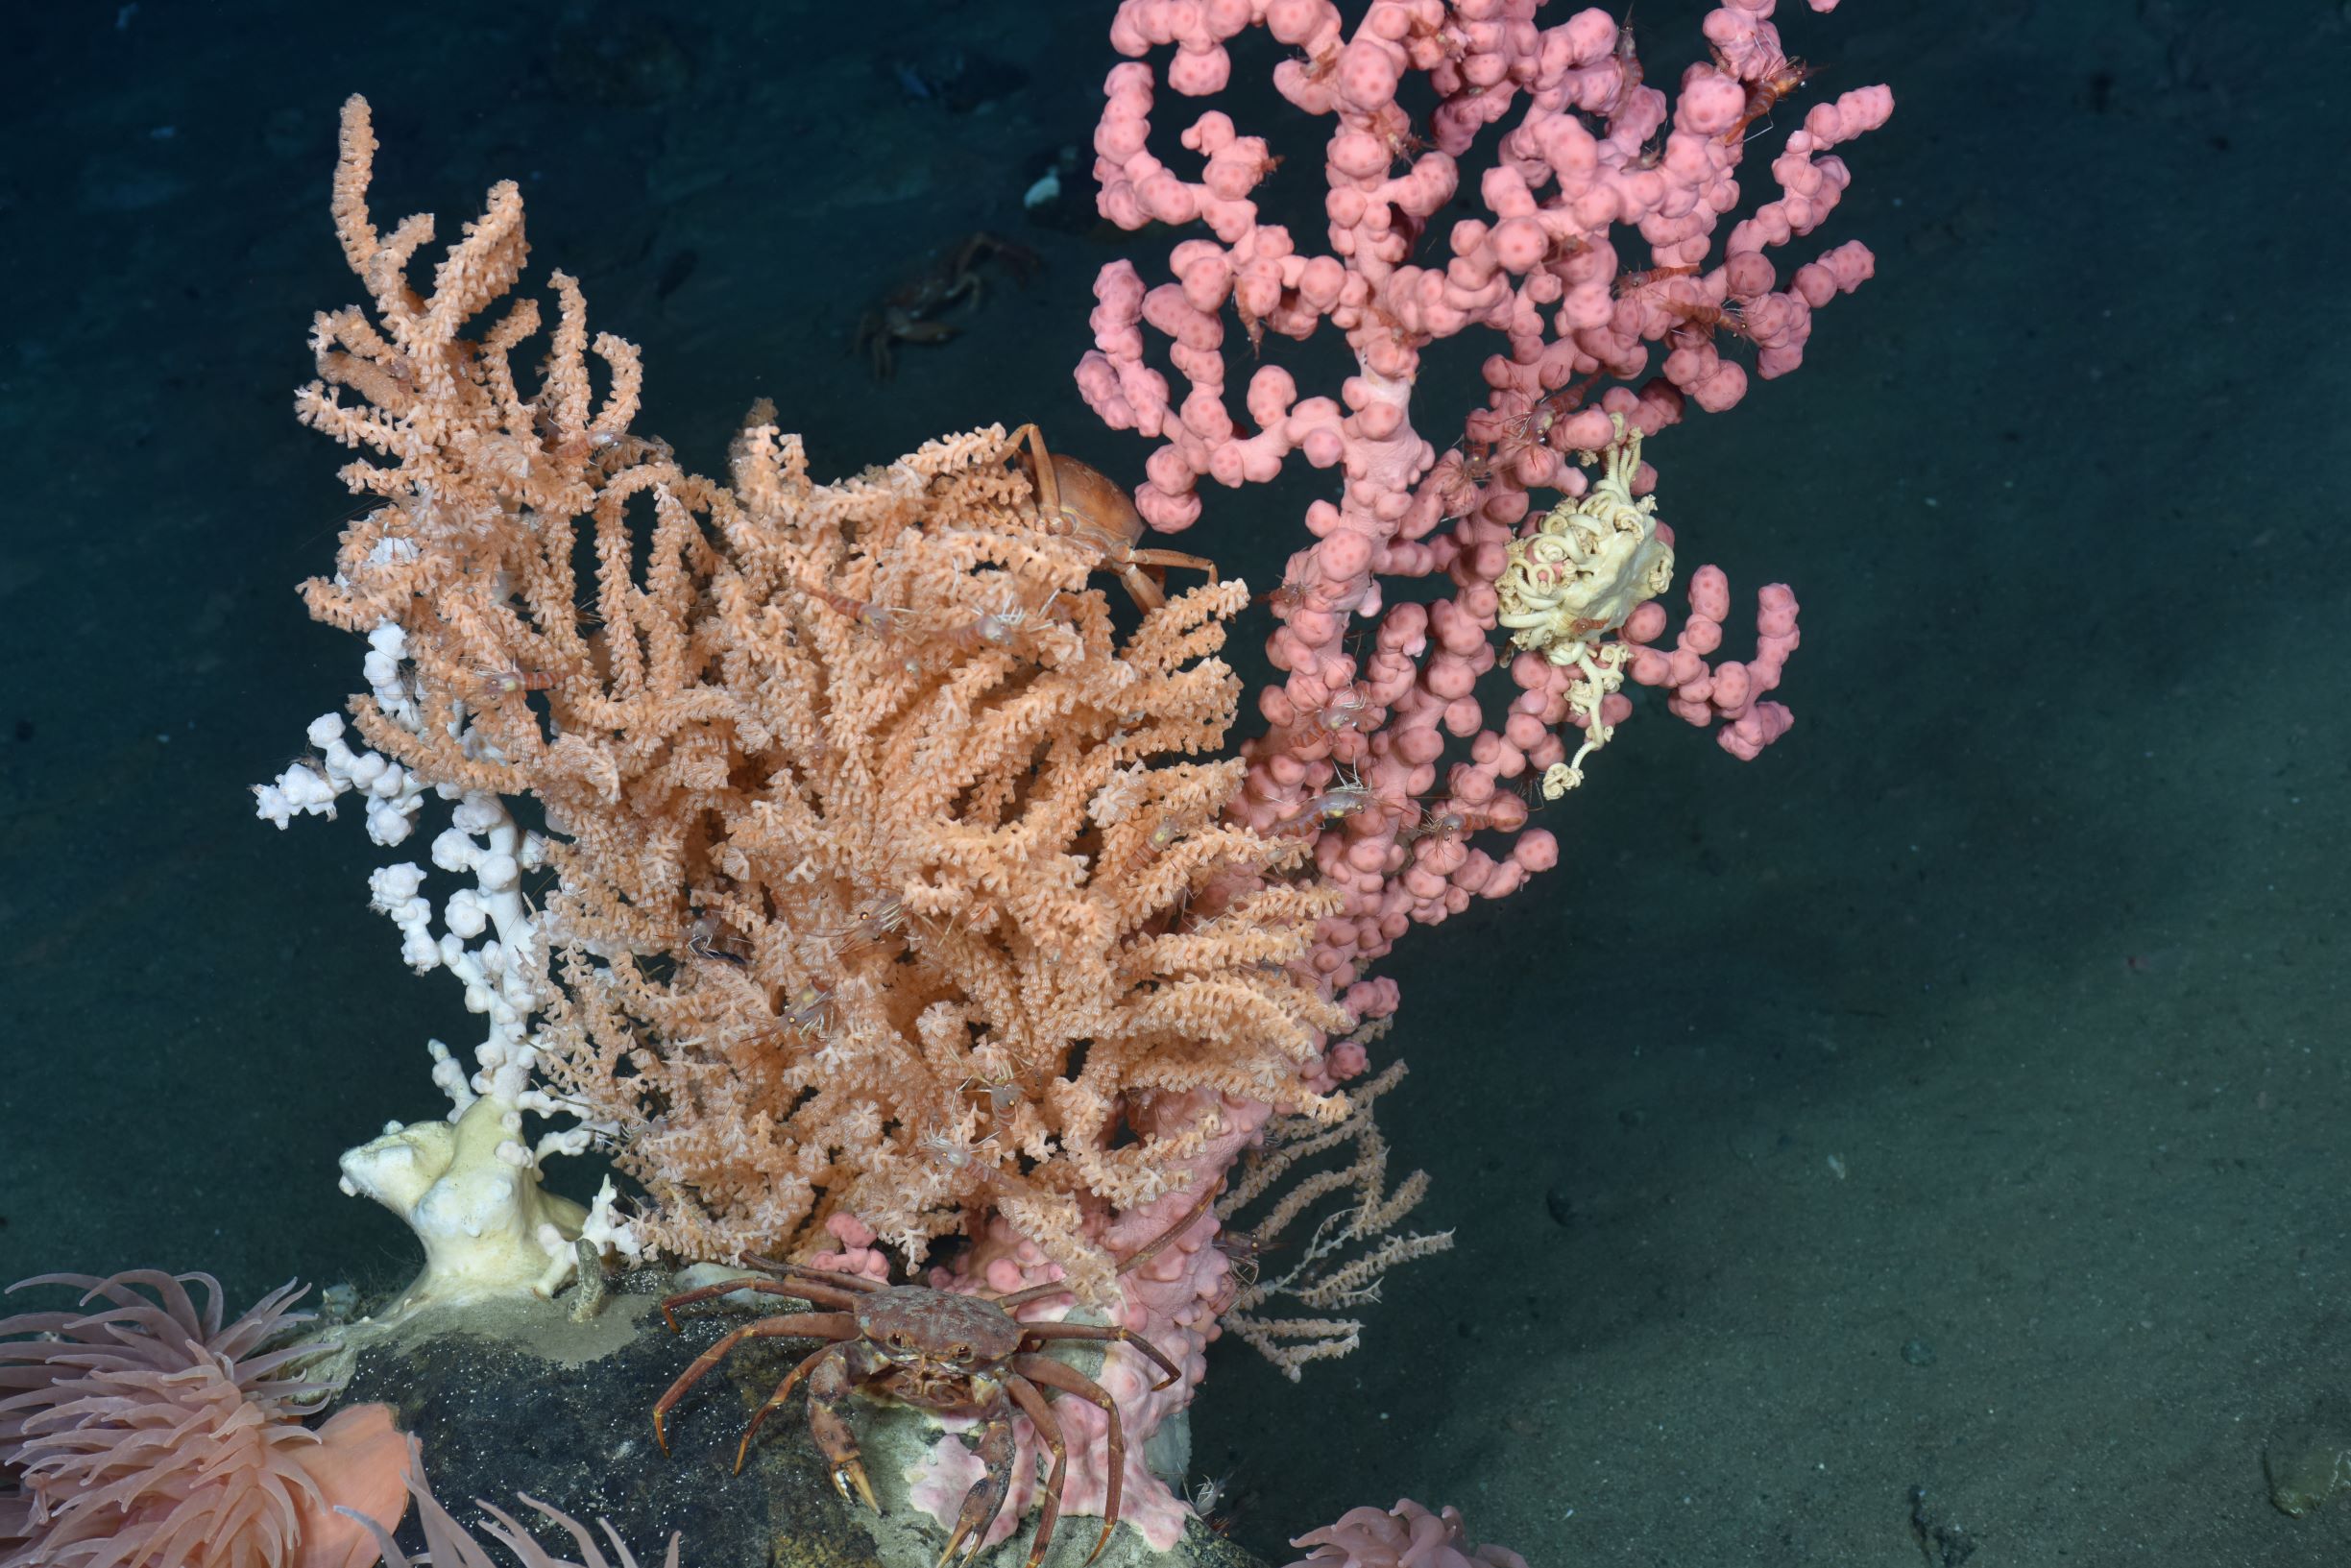 Un crabe à la base d’un peuplement de coraux, dont l’octocorail, Paragorgia arborea, et l’espèce Primnoa resedaeformis.